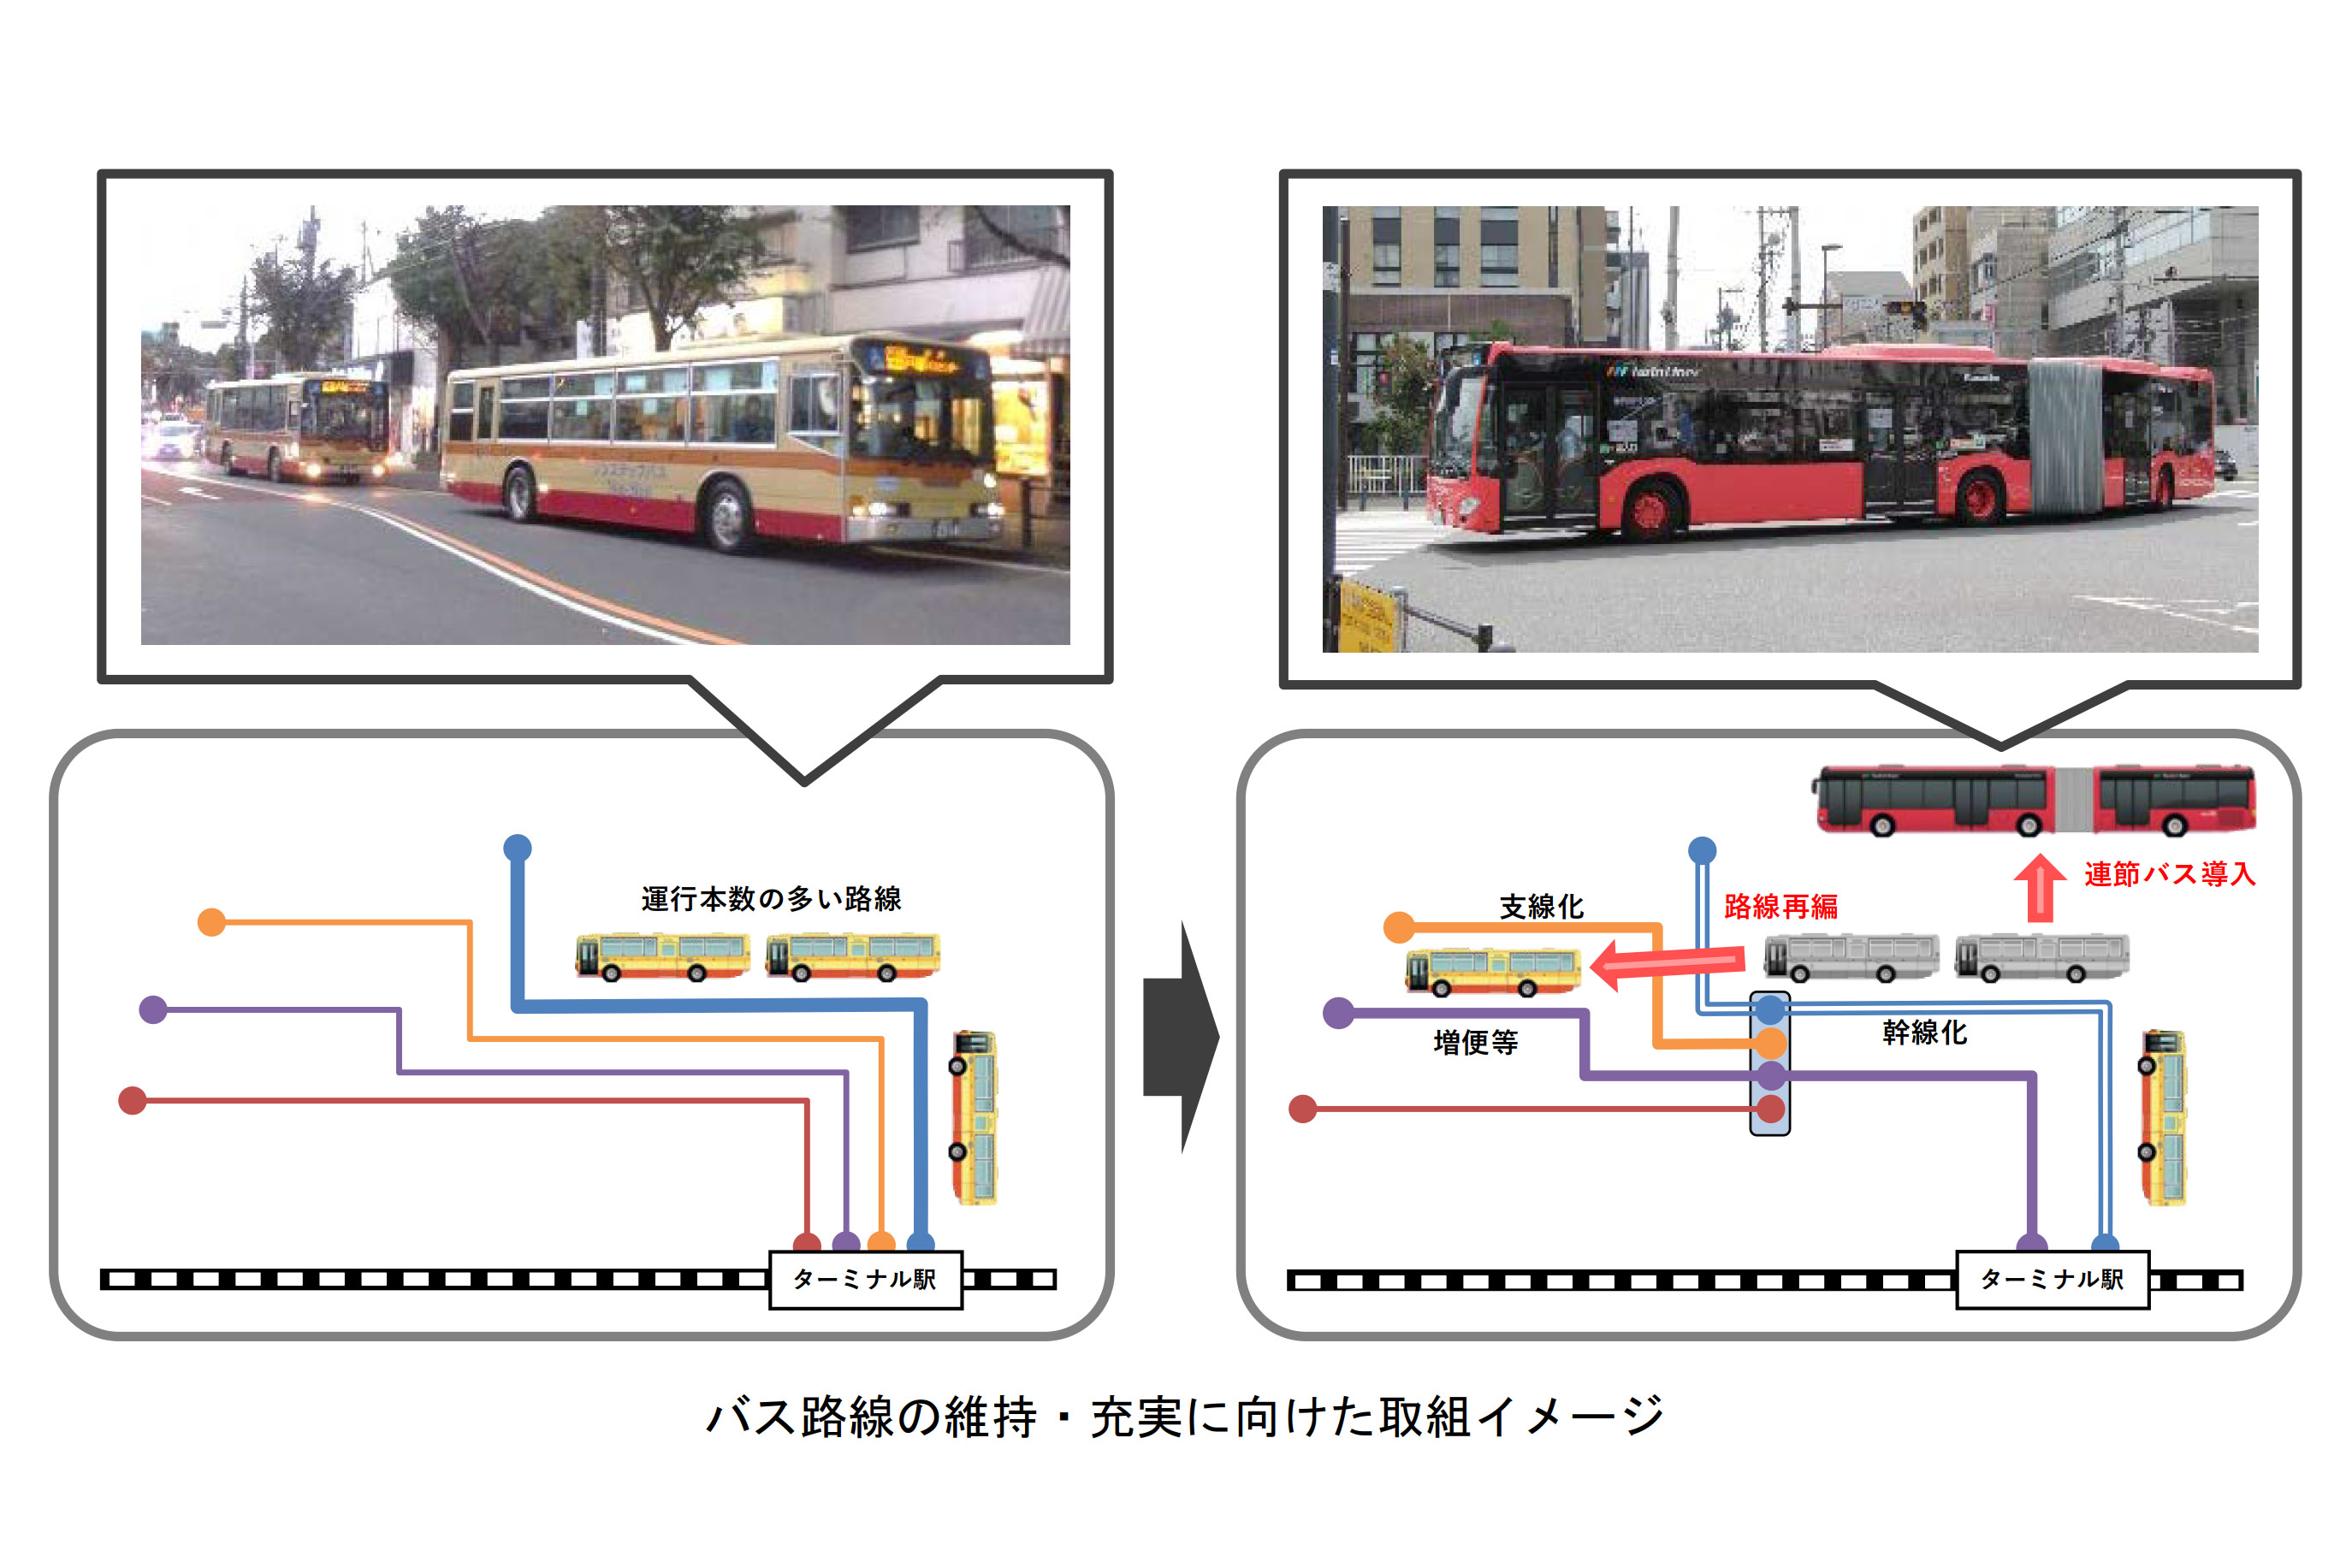 横浜市と神奈川中央交通、バス路線維持に向けて基本協定締結。戸塚区 